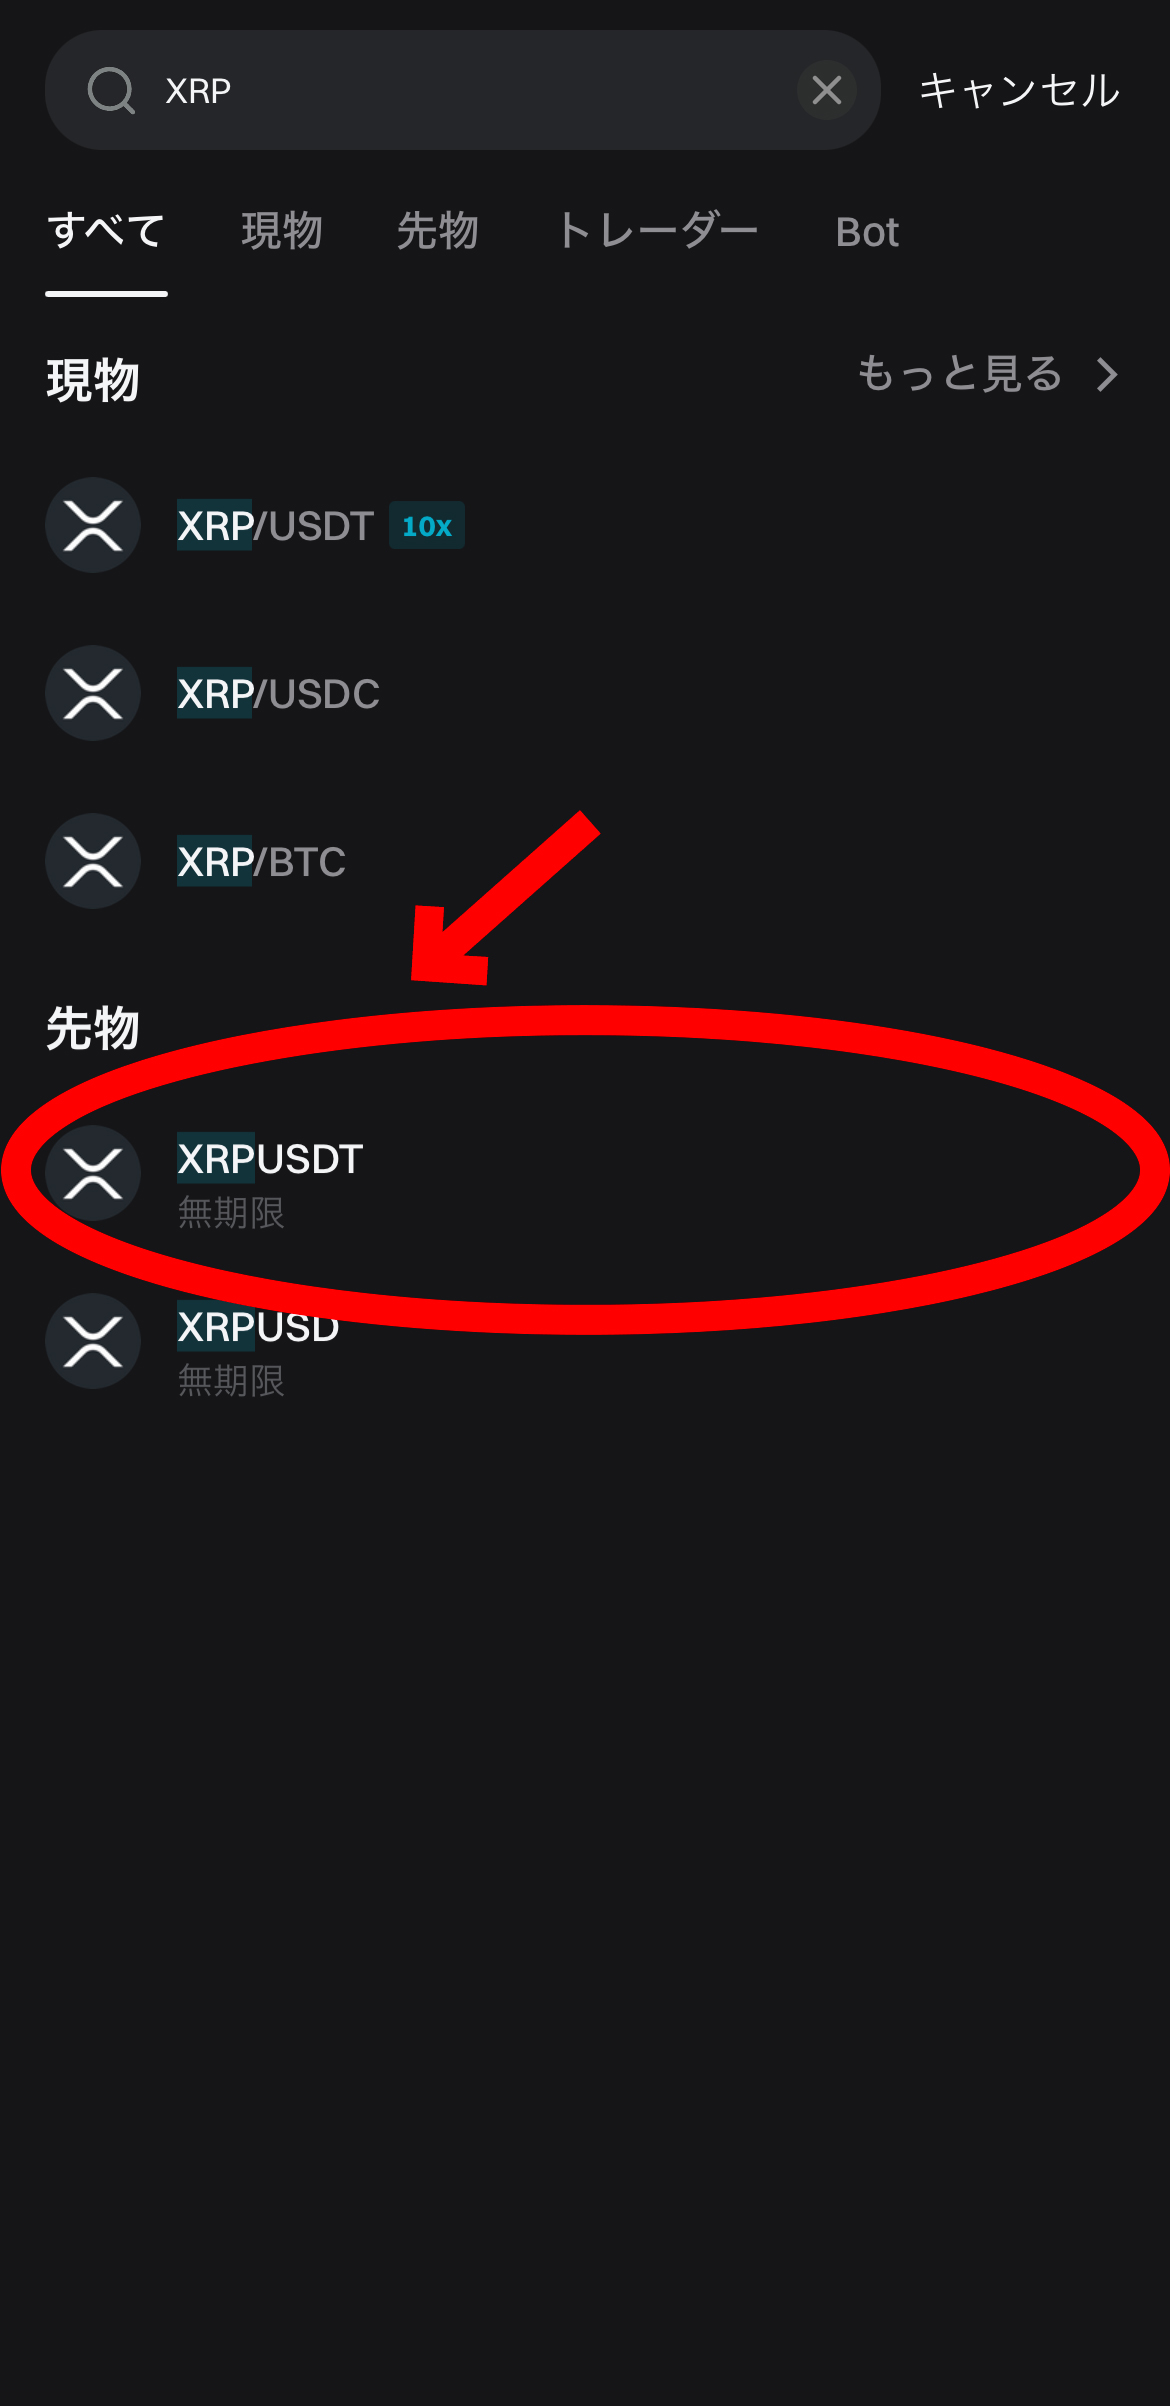 【動画あり】XRP（リップル）の買い方、レバレッジ方法【Bitget】【ビットゲット】【取引所】【先物】【暗号資産】【仮想通貨】XRPUSDT（無期限）を選択します